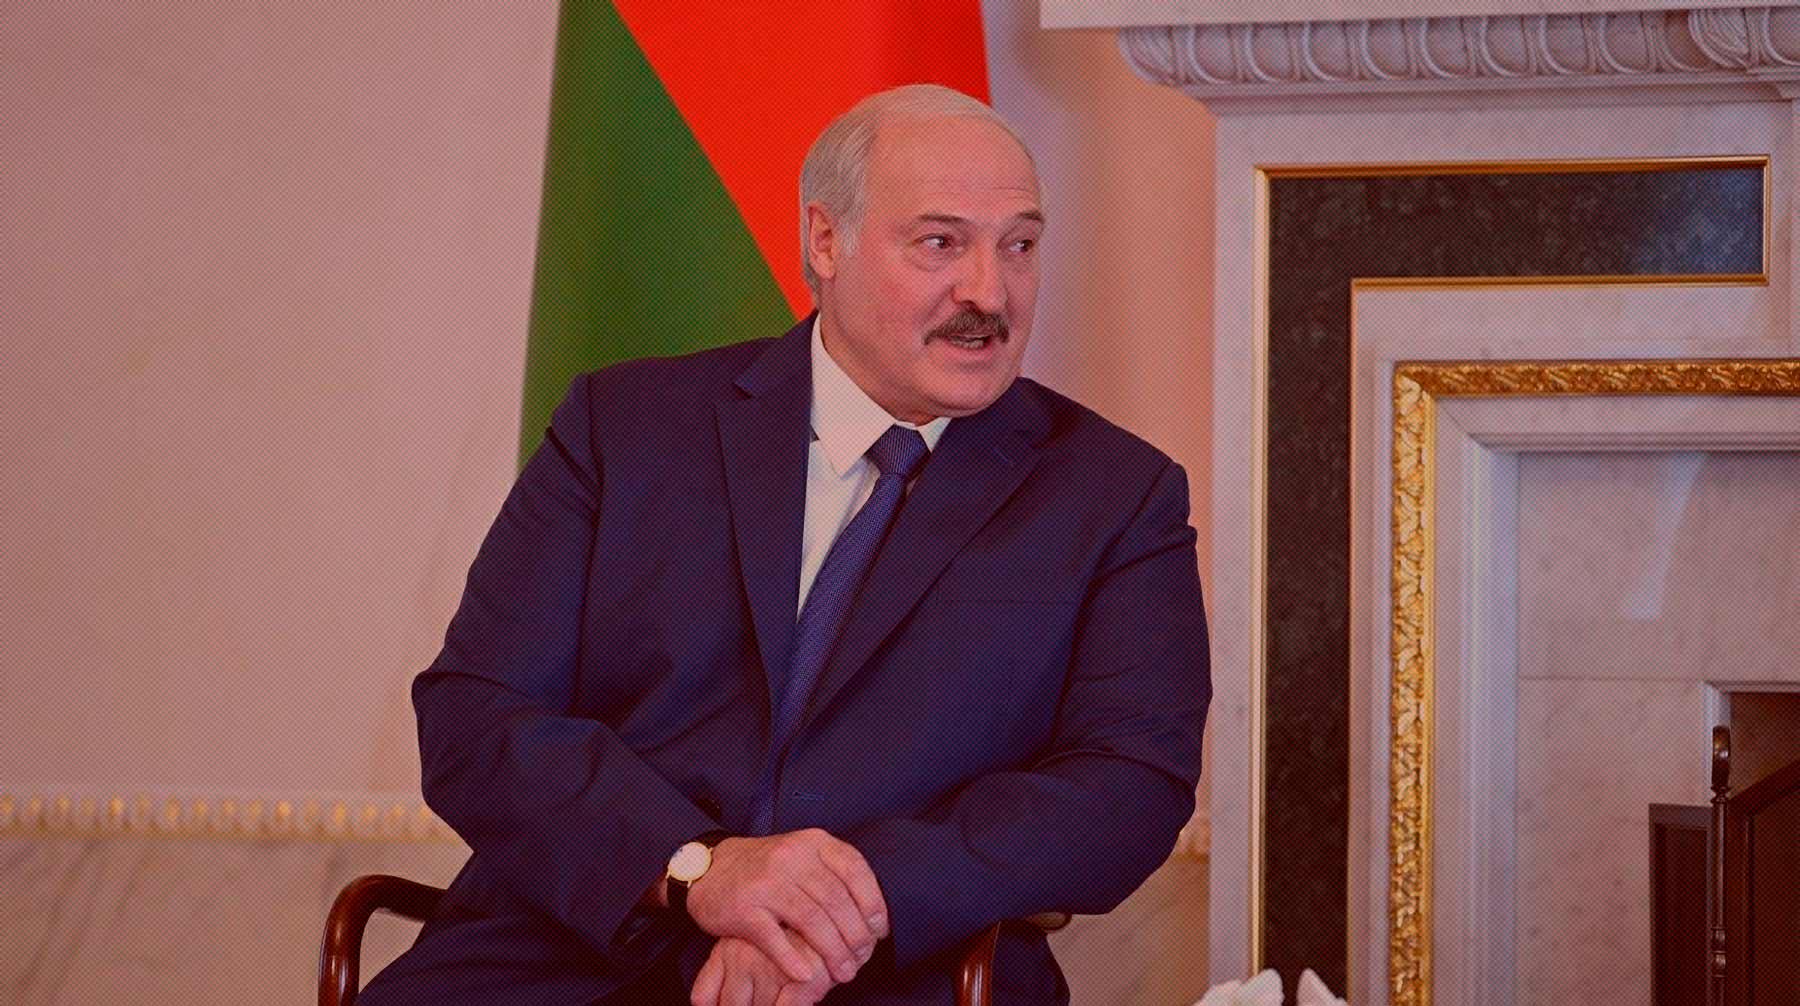 Предсказатель также рассчитал, какой год станет для белорусского президента наиболее тяжелым в ближайшем будущем Фото:  Global Look Press / Kremlin Pool